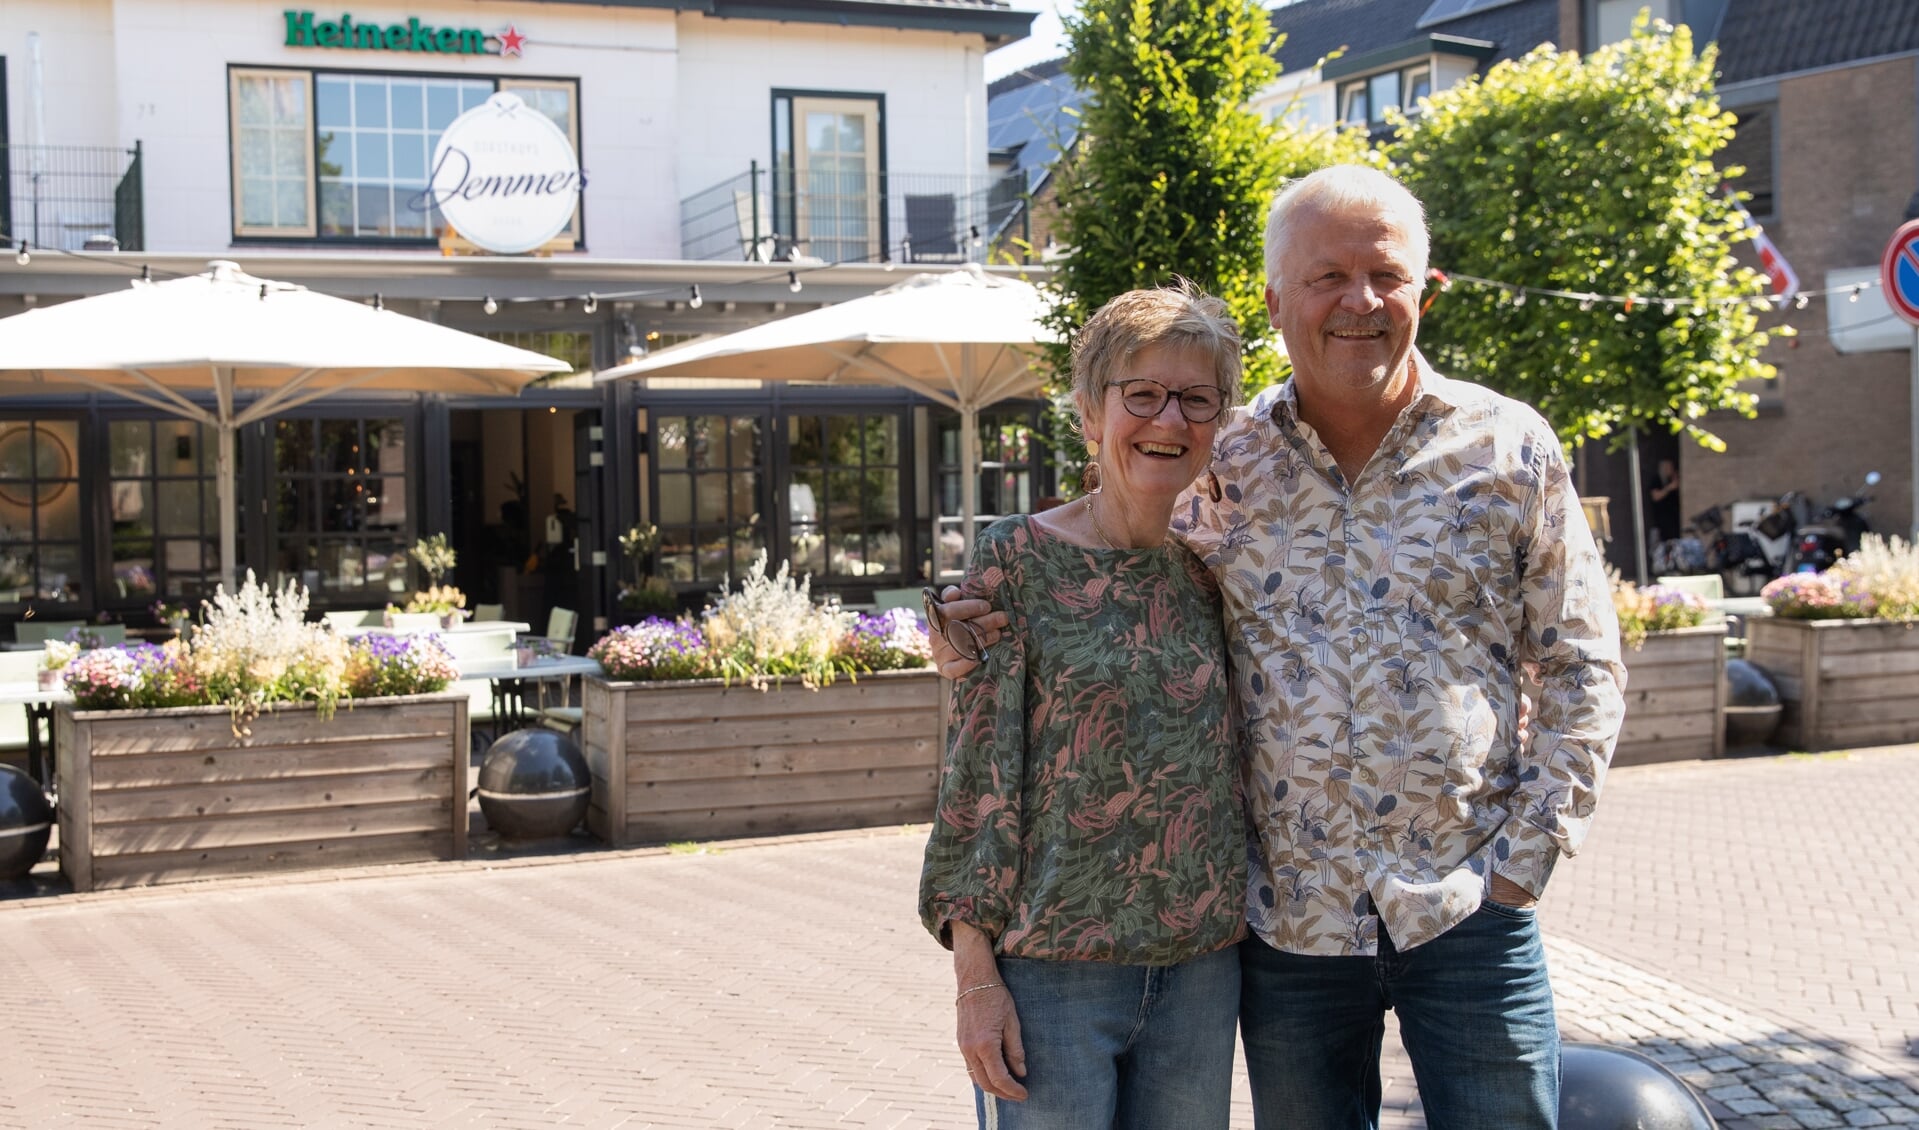 Na 23 jaar verlaten Ruud en Mieke Bouwman restaurant de Generaal en maken een doorstart op de Brink in Baarn.
